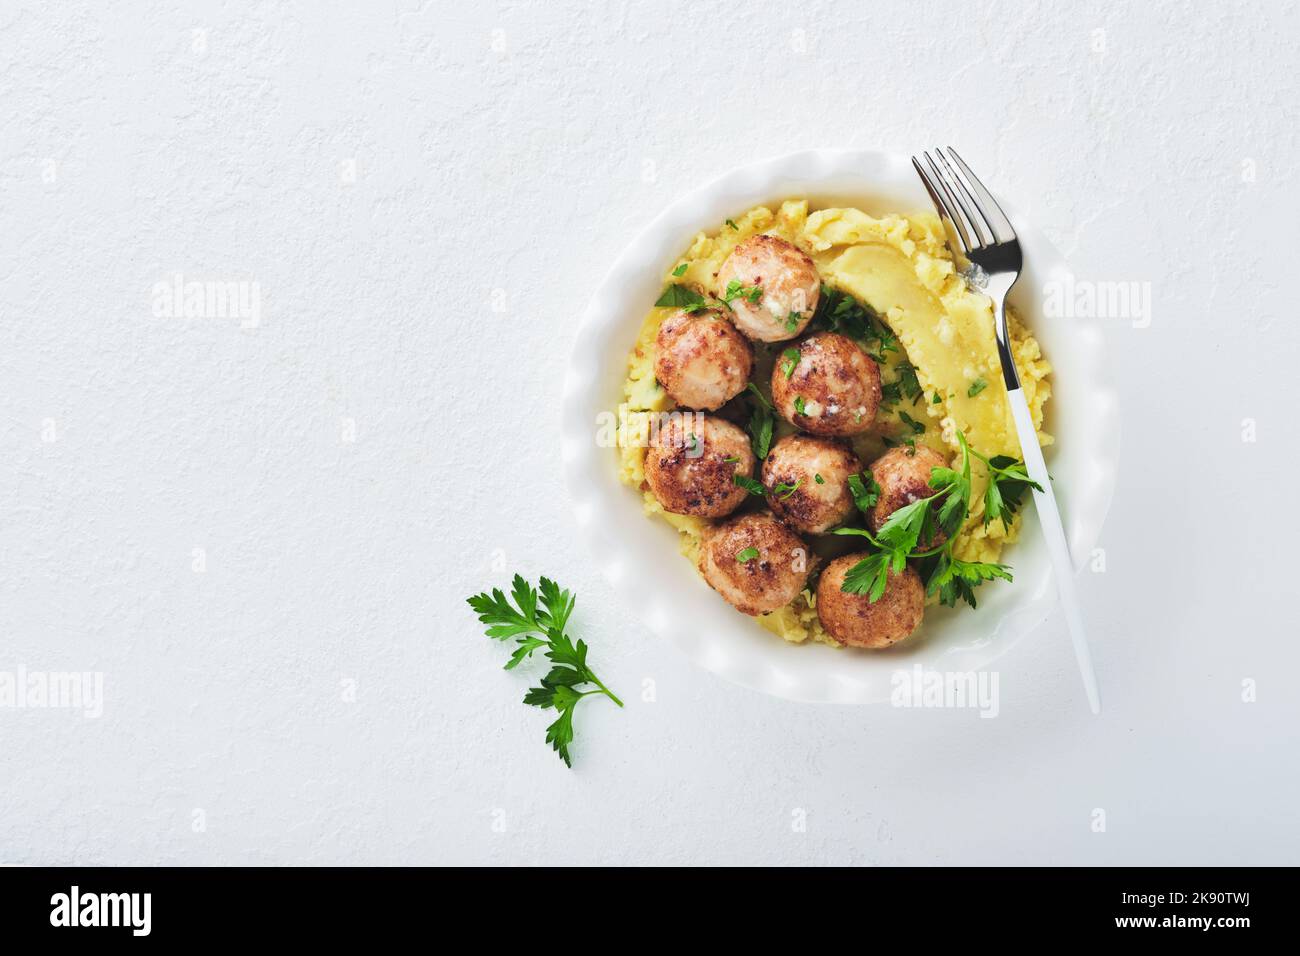 Schwedische Fleischbällchen in Sahnesauce, Kartoffeln und Preiselbeersoße in einer Schüssel auf Schiefer-, Stein- oder Betonböden. Schwedische Küche. Köstliche cremige ma Stockfoto